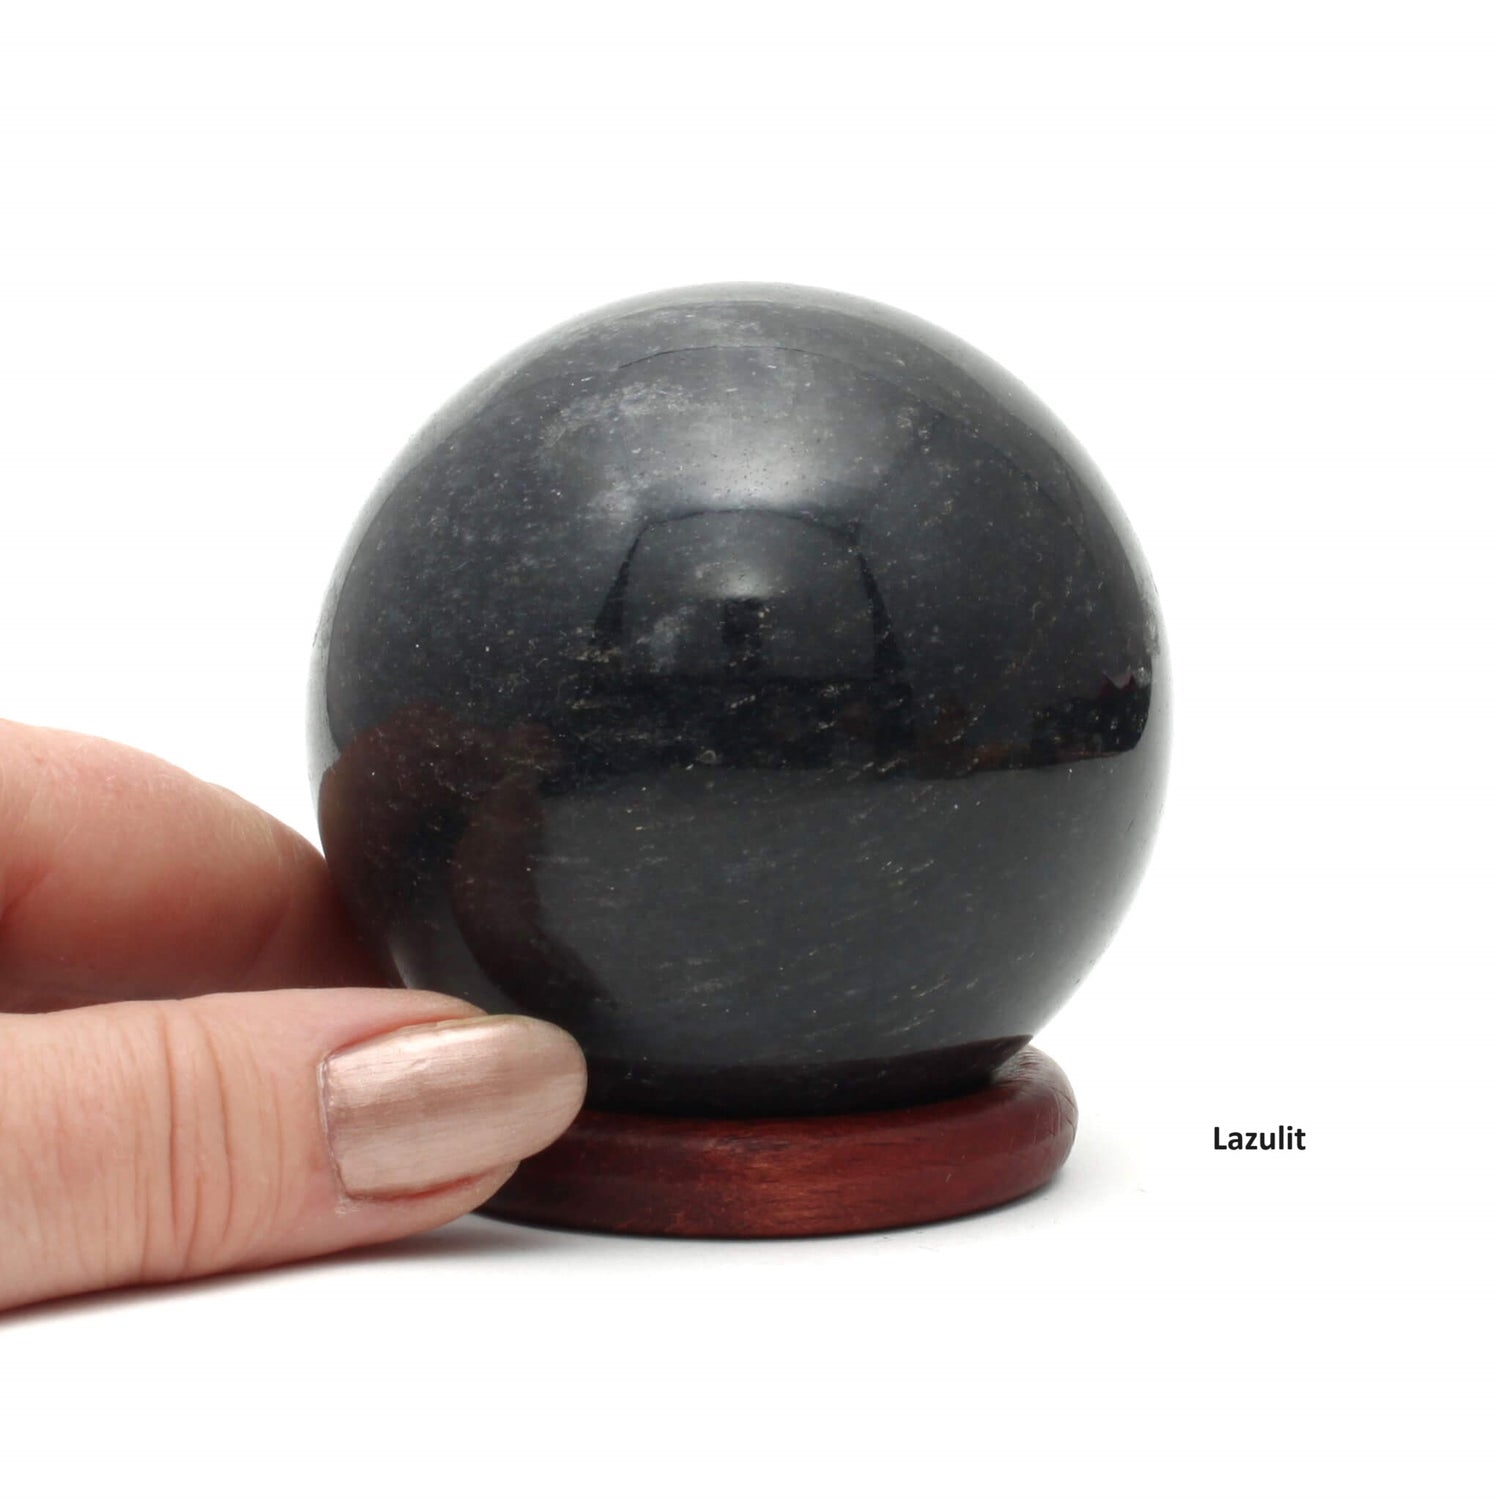 Lazulit sphere i meget høj kvalitet